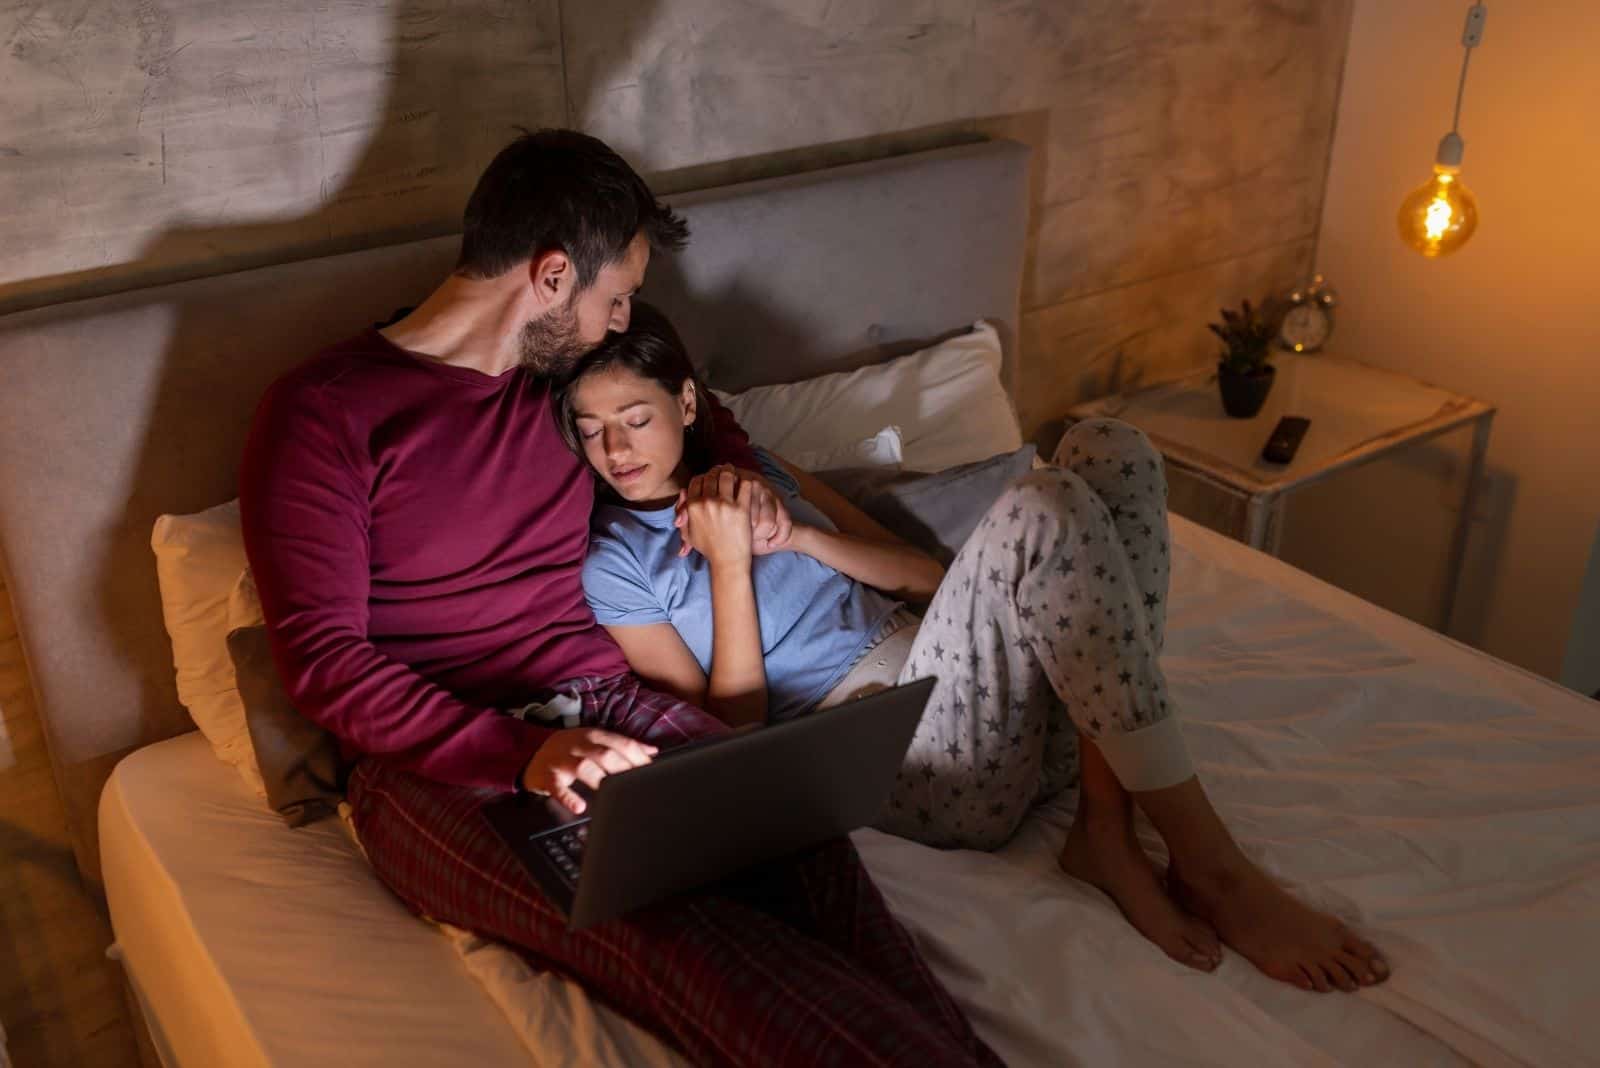 Homme travaillant tard dans la nuit, assis dans son lit et utilisant un ordinateur portable pendant que sa femme dort à côté de lui.